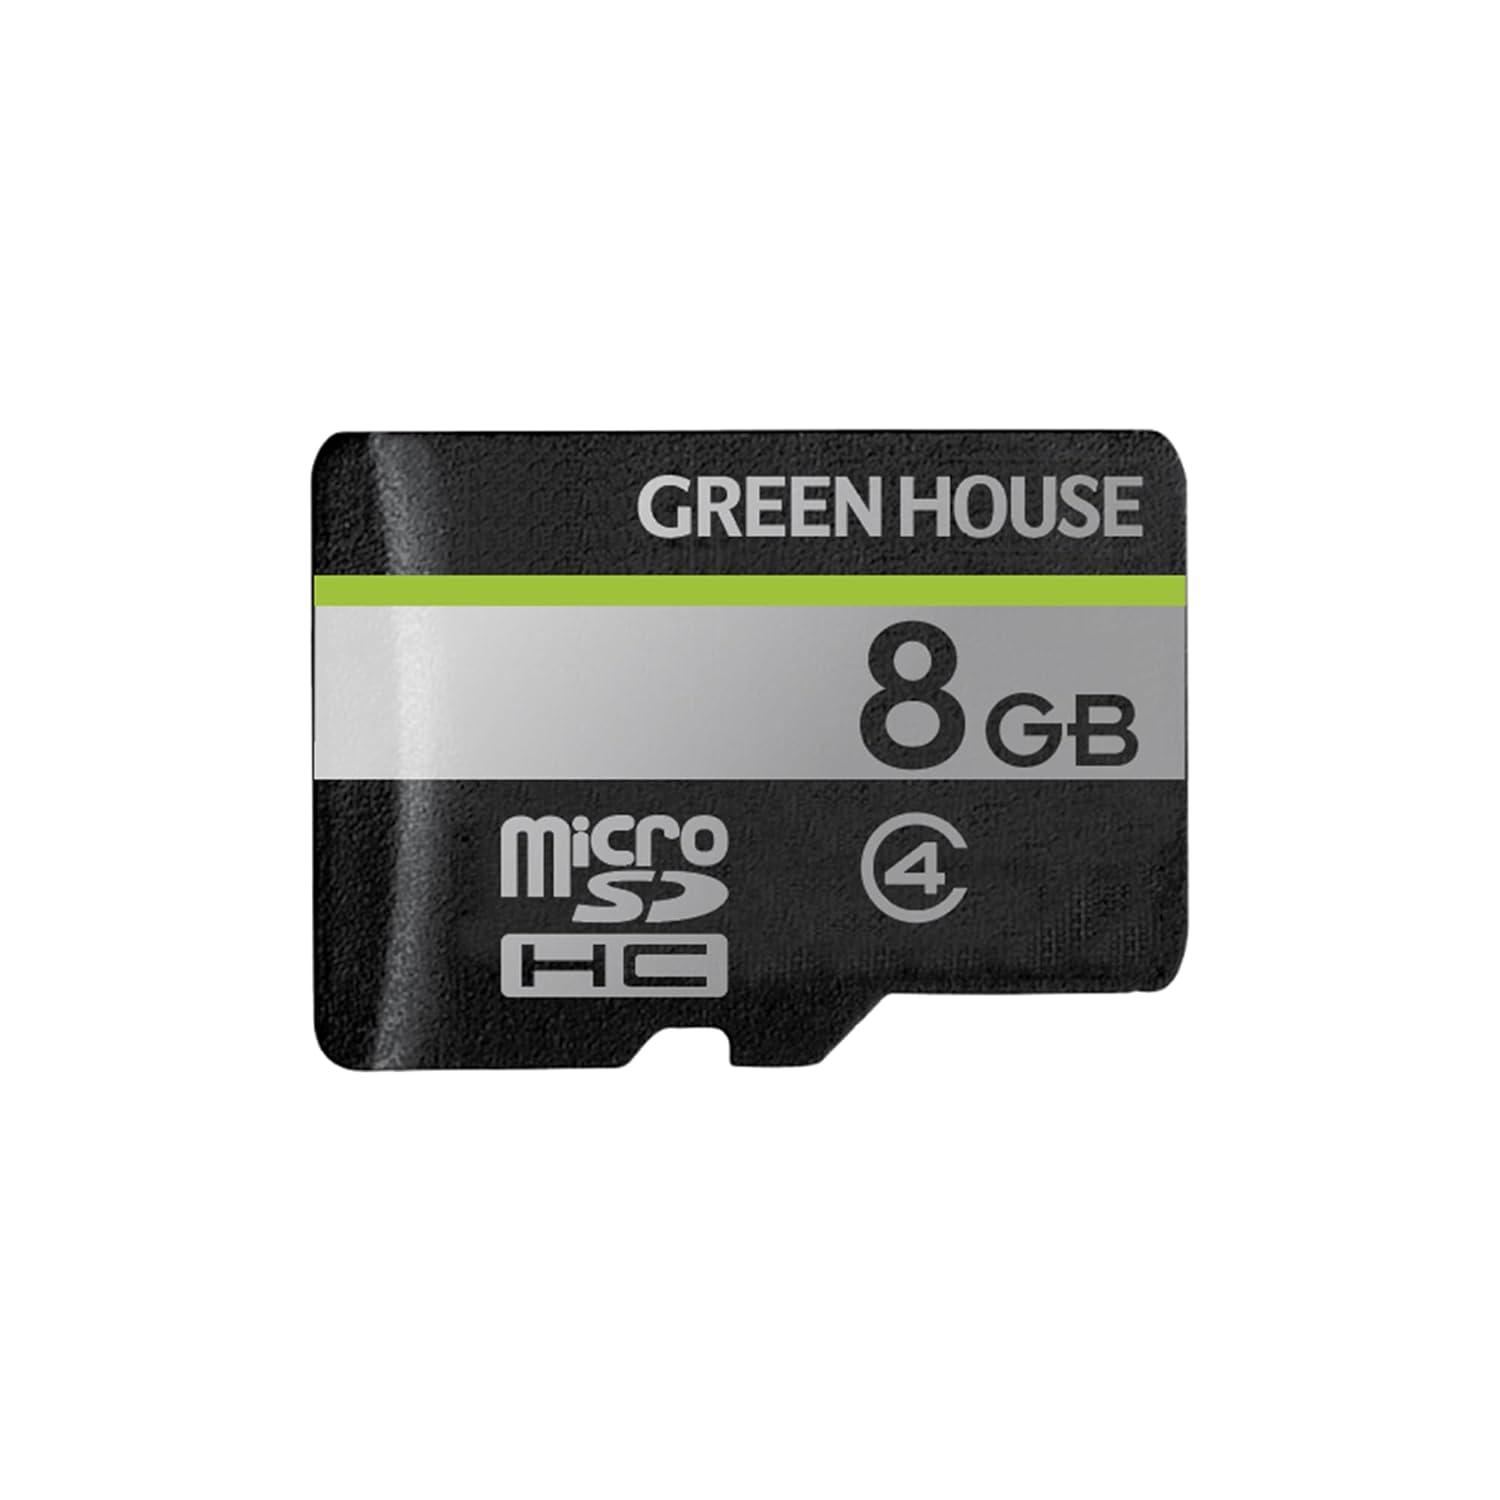 GH-SDM-D8G microSDHCJ[h NX4 8GB(GH-SDM-D8G)